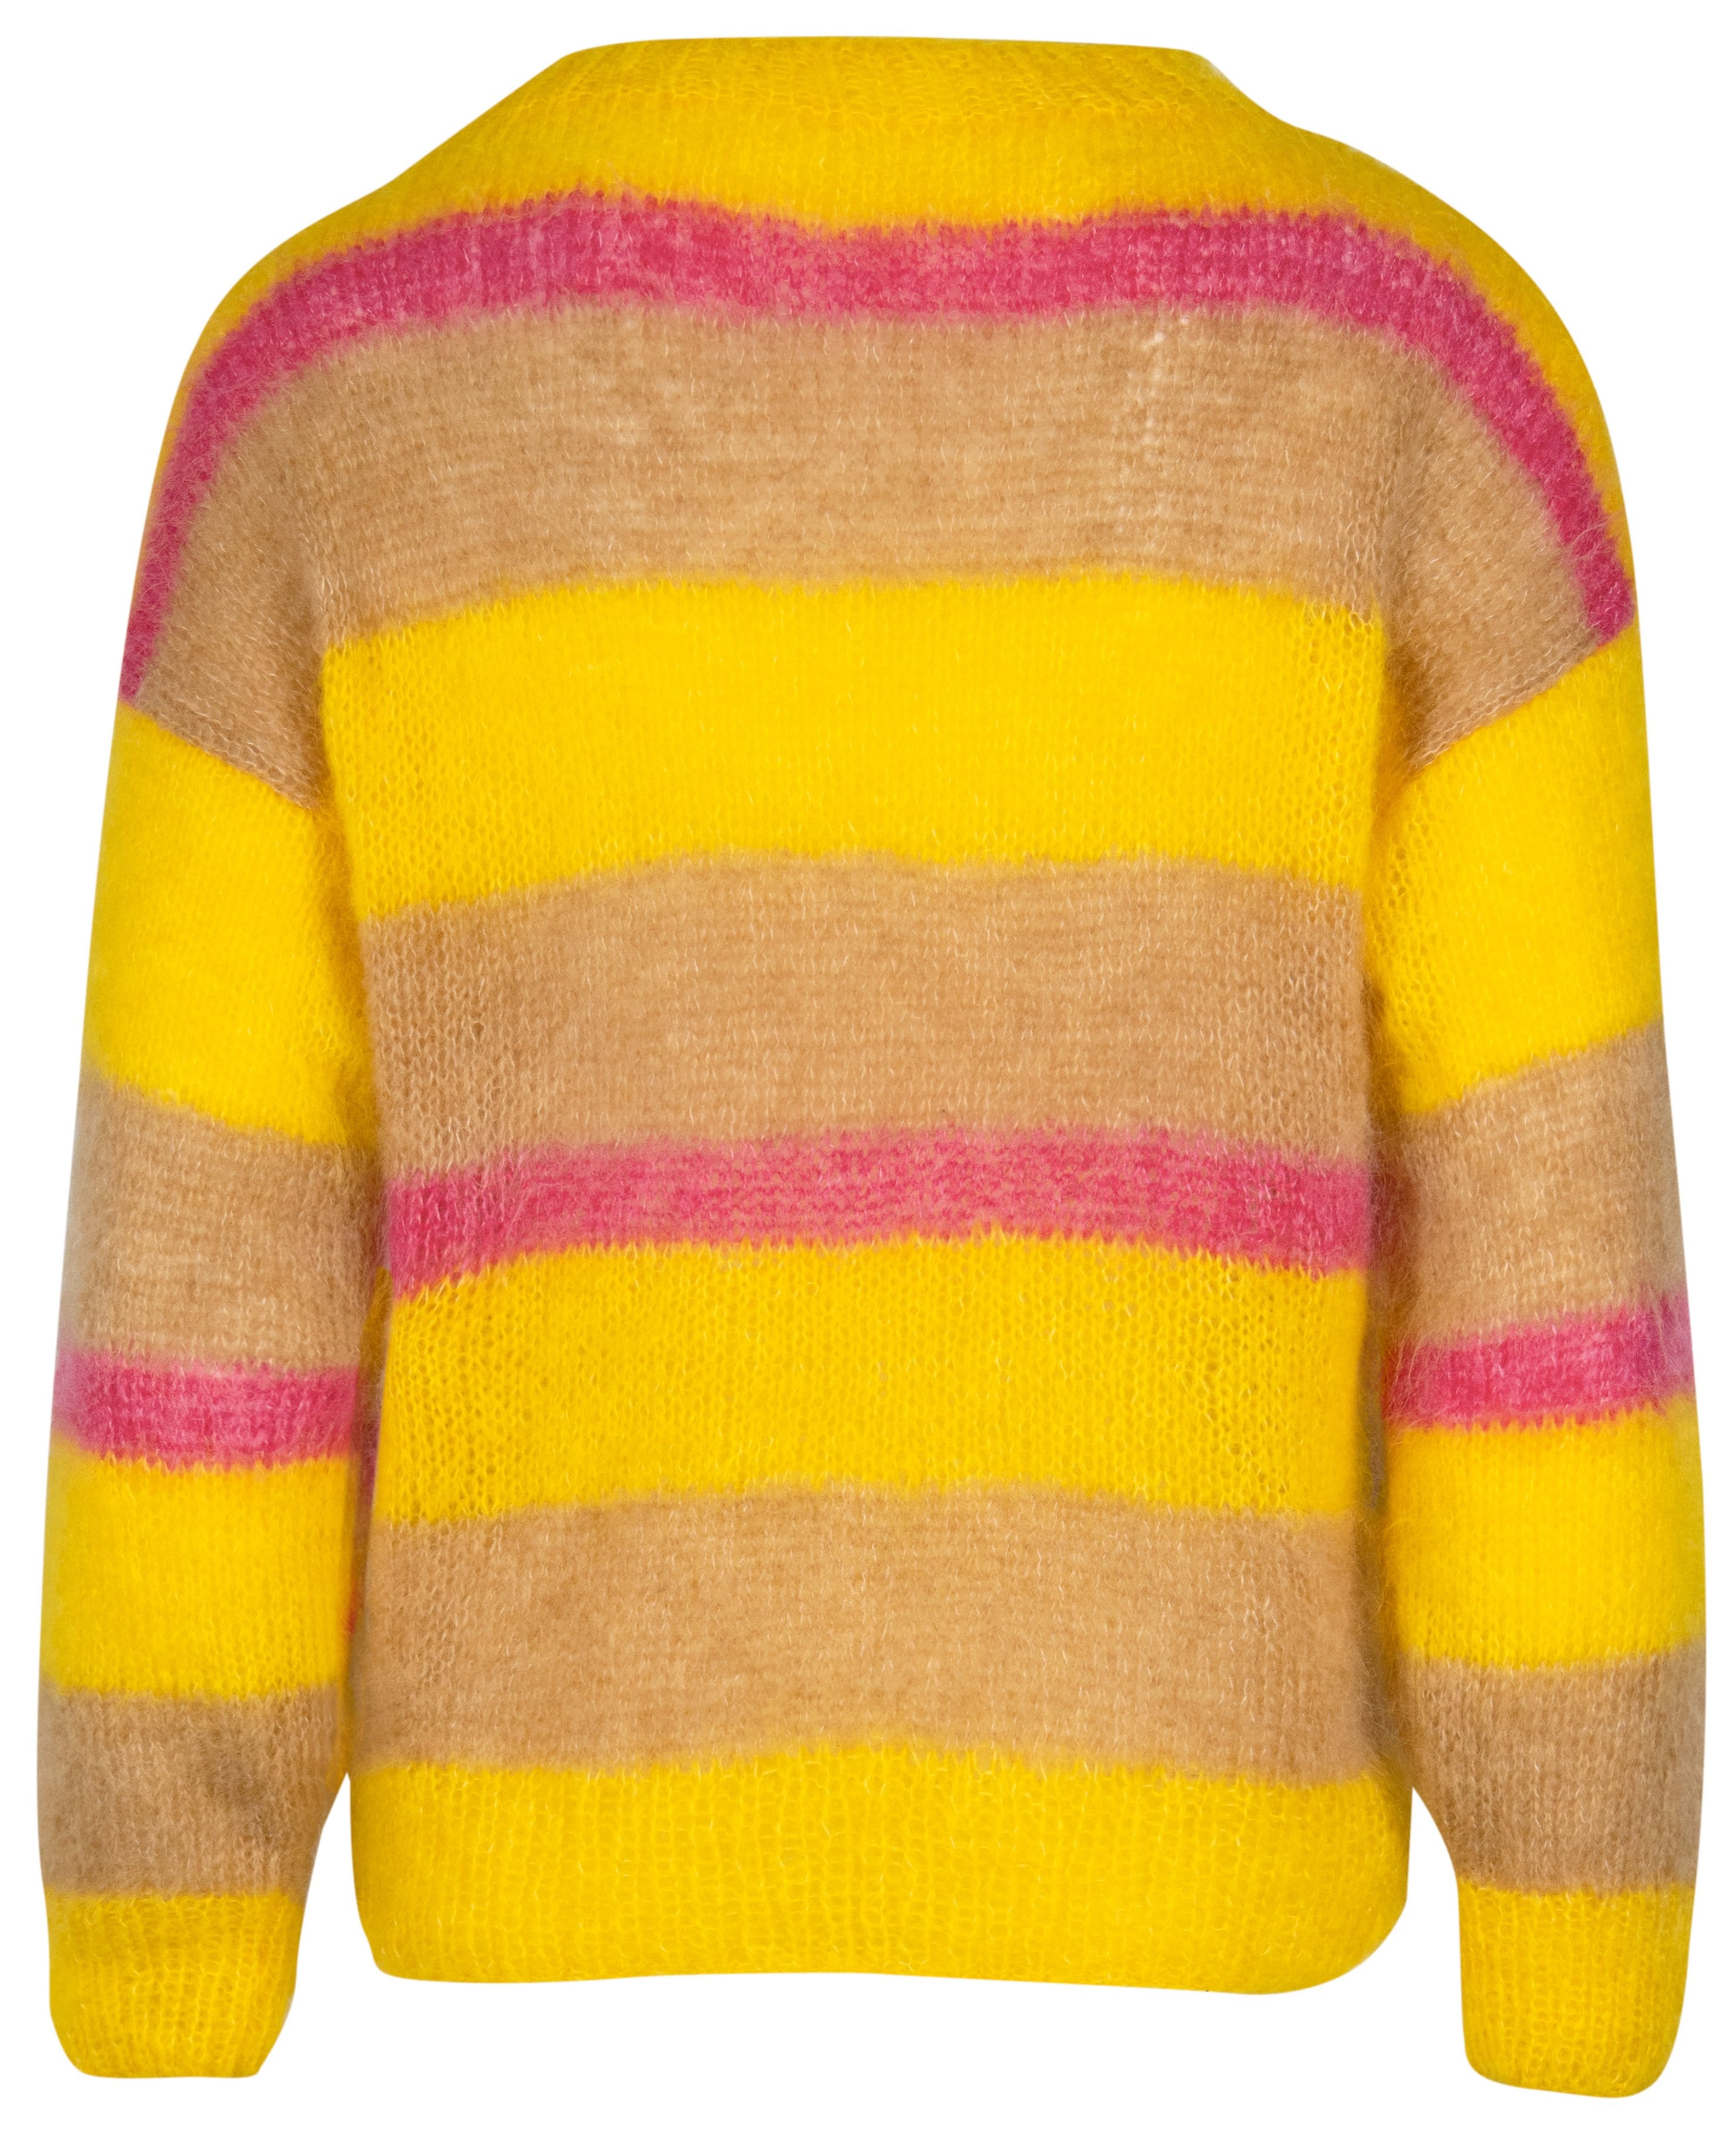 Pullover mit bunten Streifen - Strickset von LANA GROSSA jetzt online kaufen bei OONIQUE